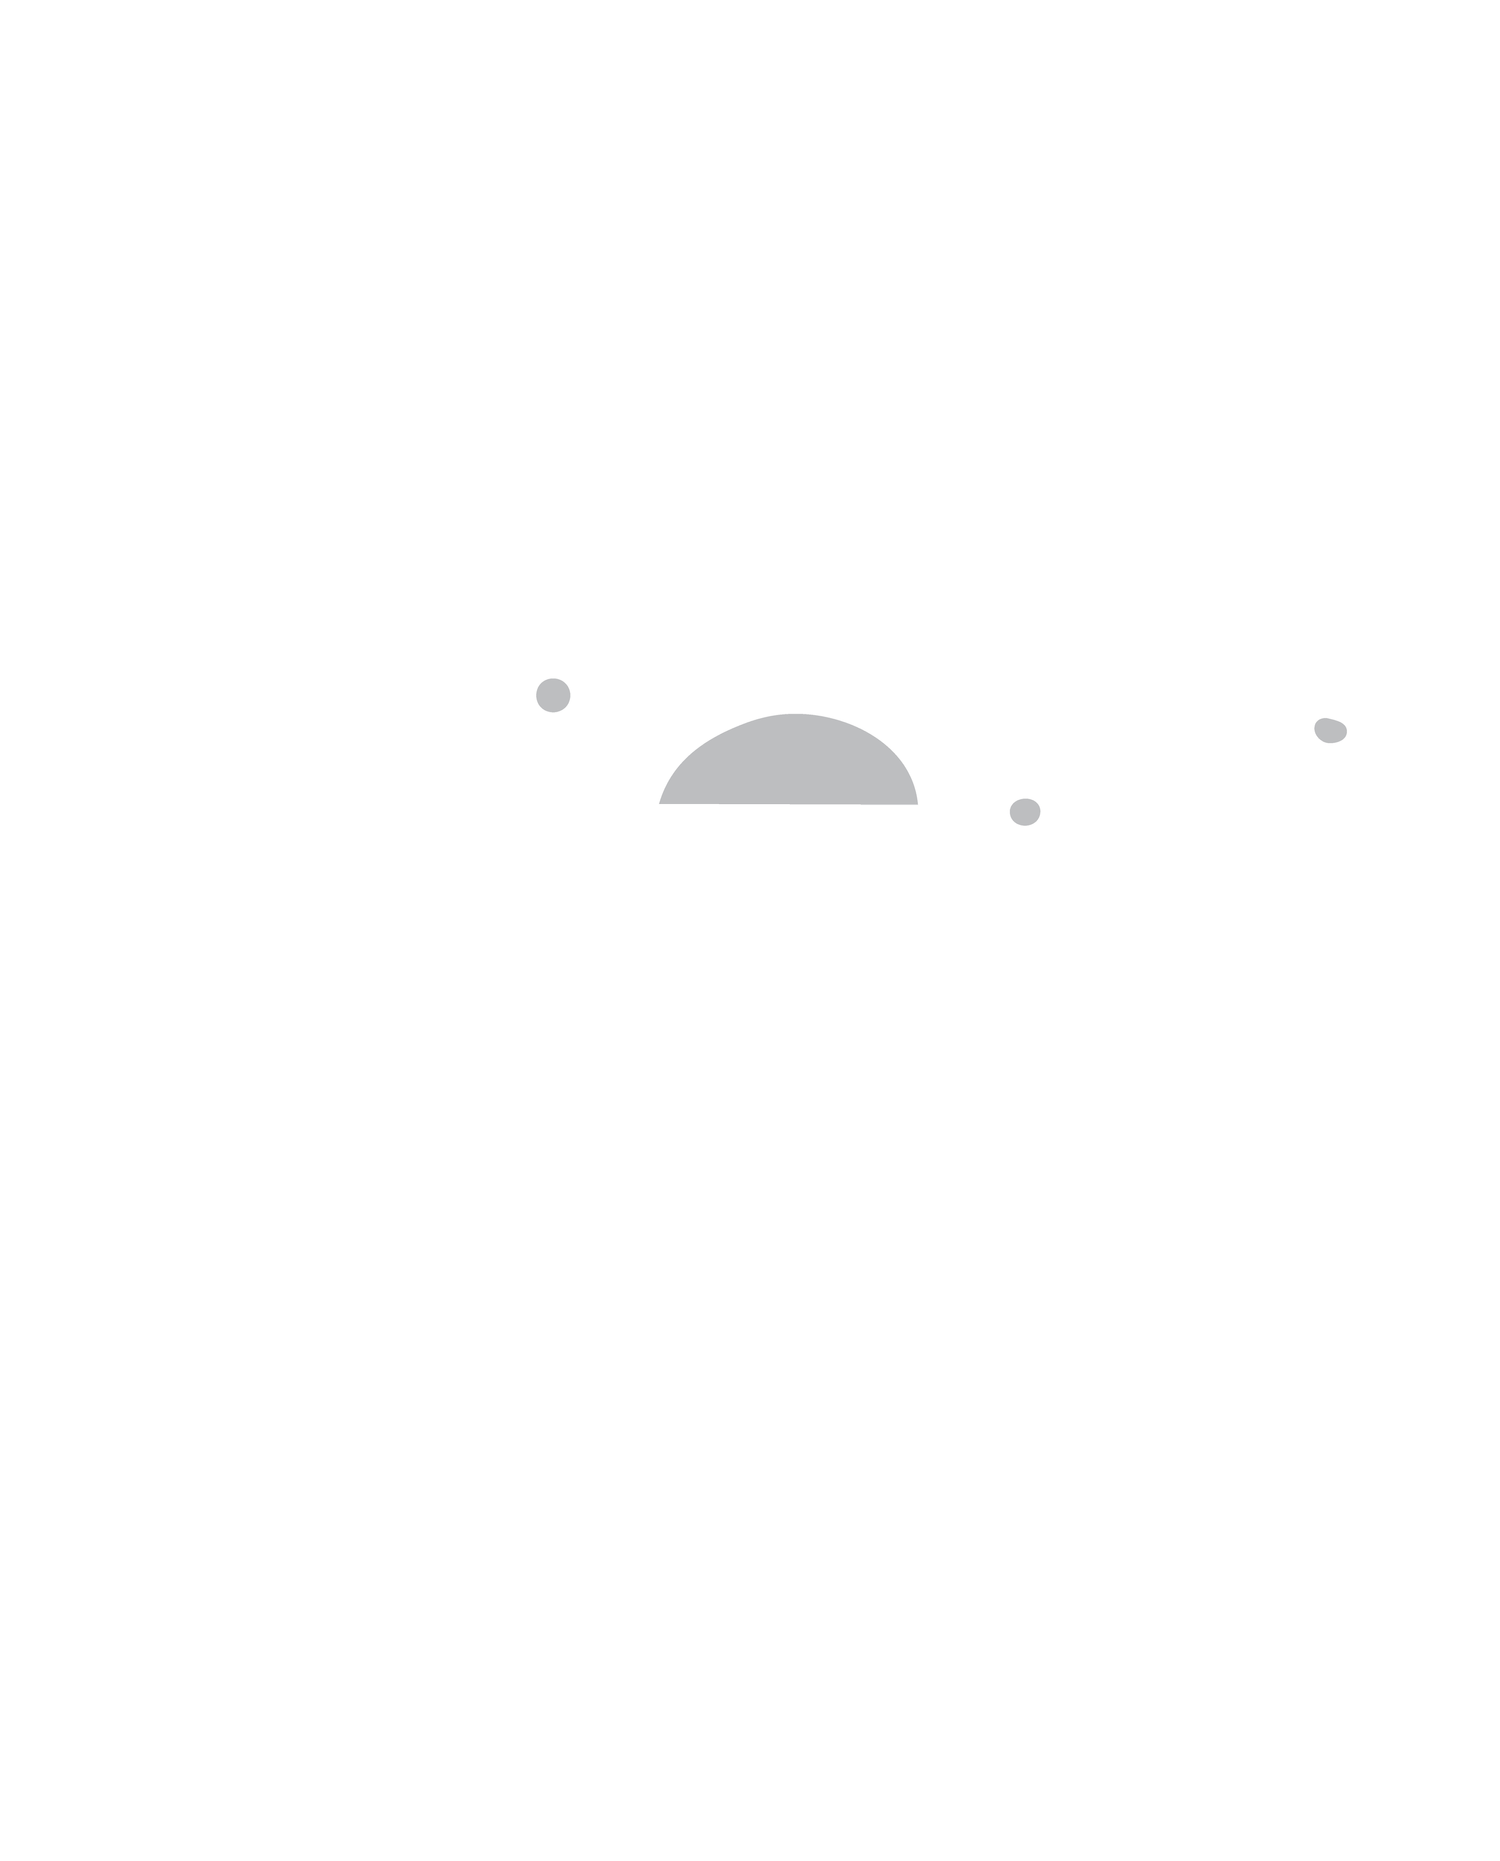 Imagine Milk